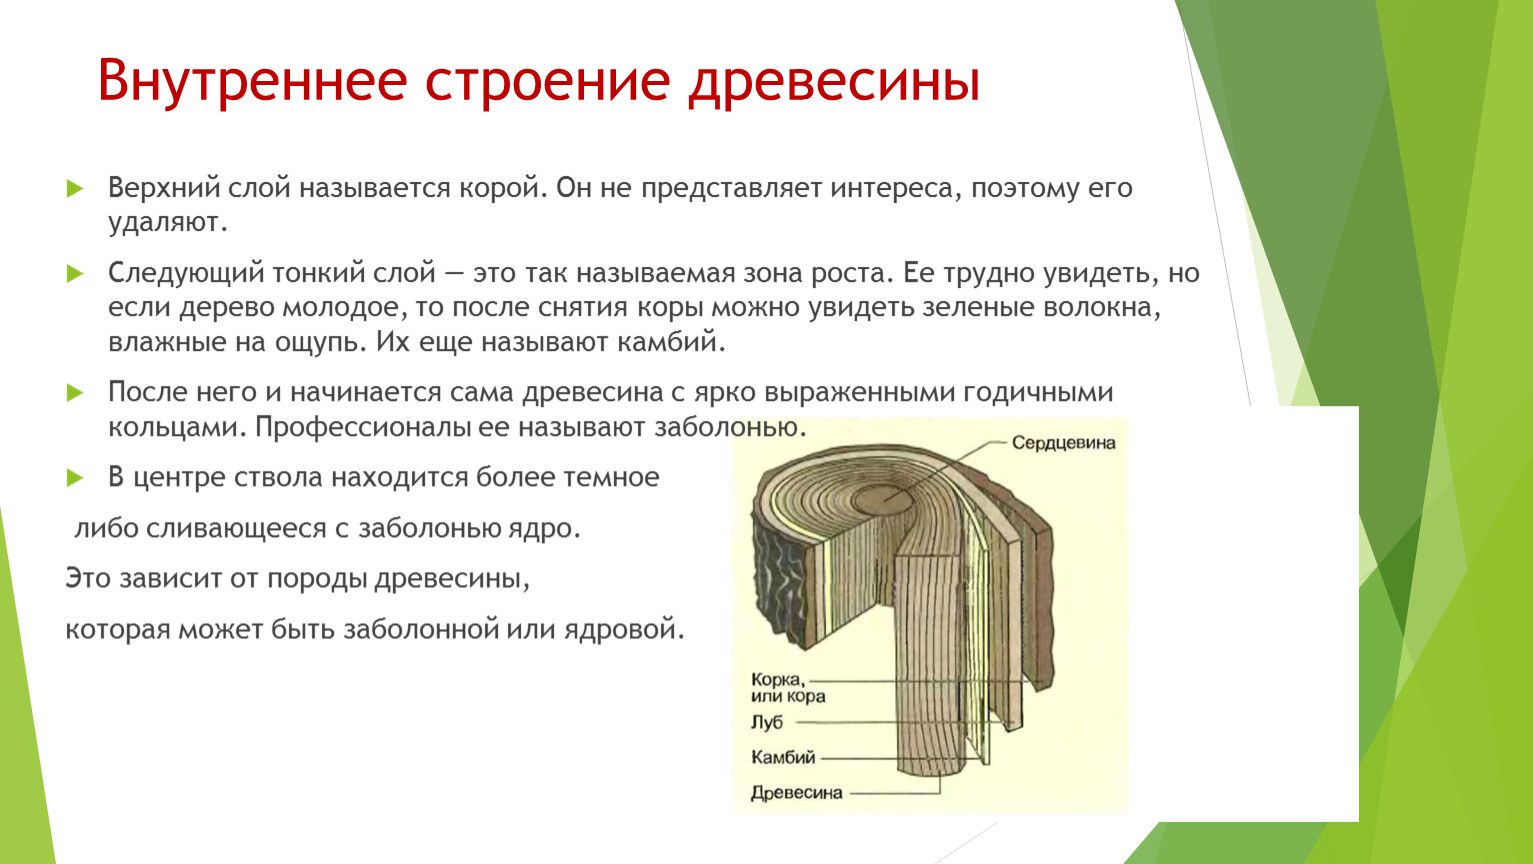 Какая функция у волокон древесины. Строение древесины 5 класс. Строение и функция слоев древесины. Древесина описание строения и функции. Микроскопическое строение древесины лиственных пород.